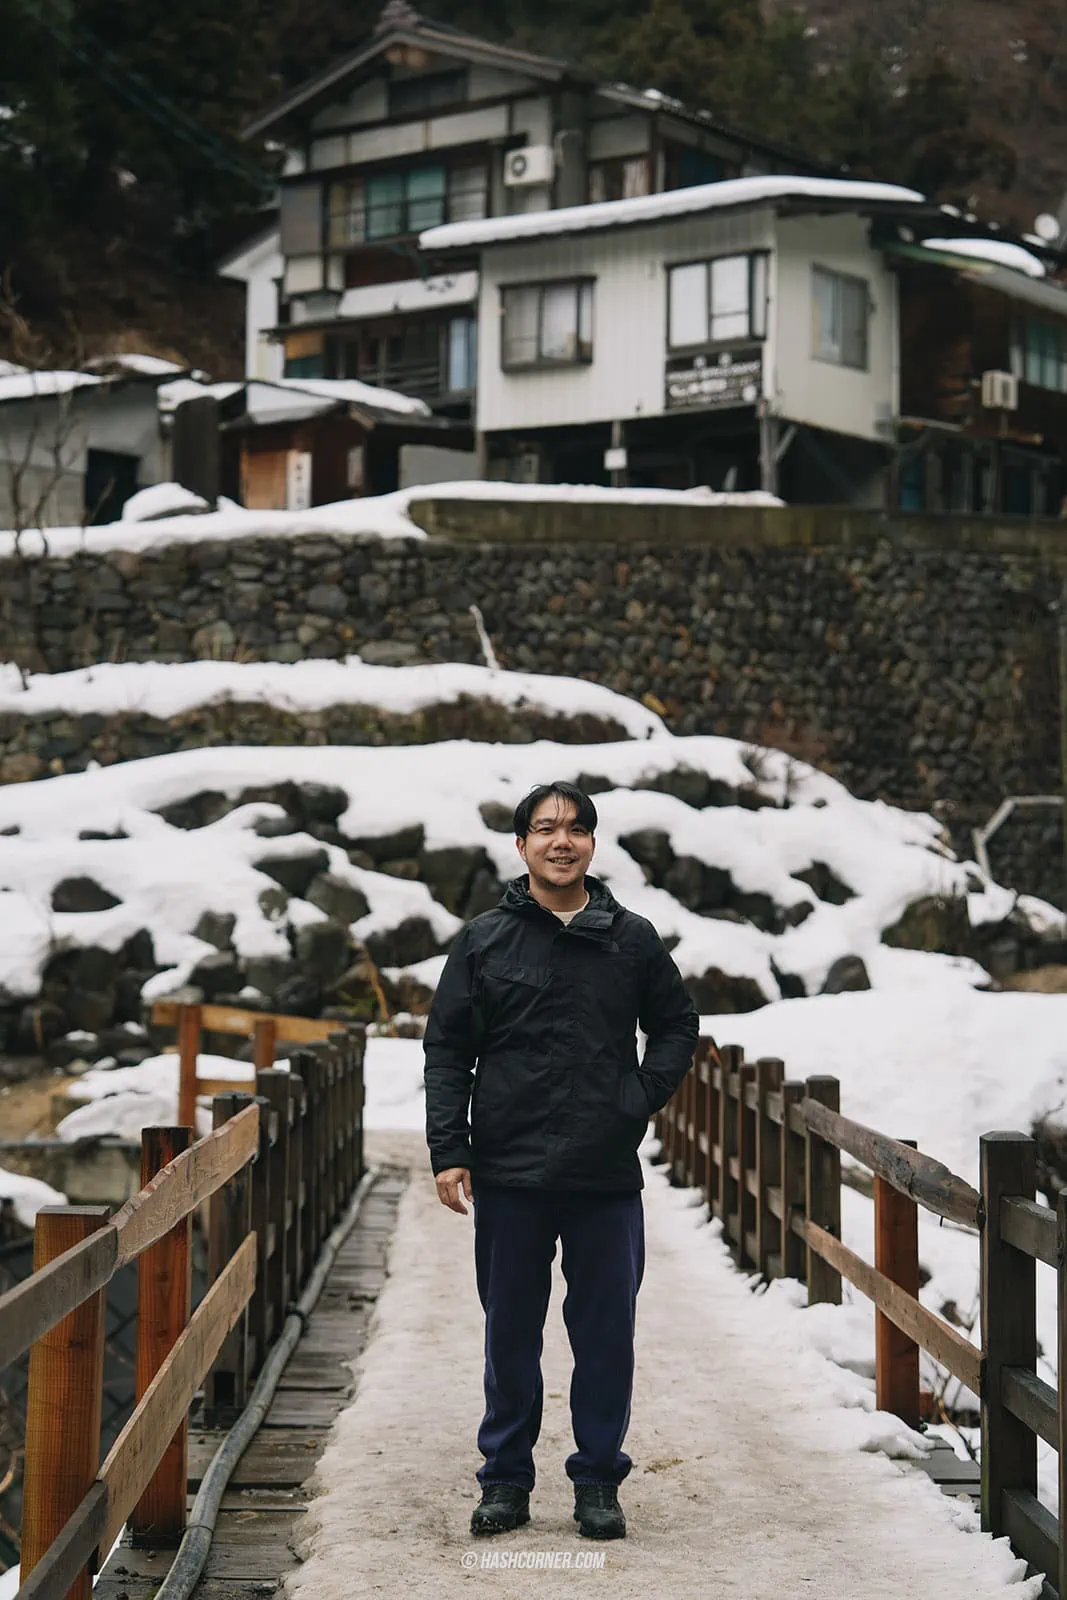 รีวิว นากาโน่ (Nagano) x ญี่ปุ่น โร้ดทริปหน้าหนาว ดูลิงแช่ออนเซ็น